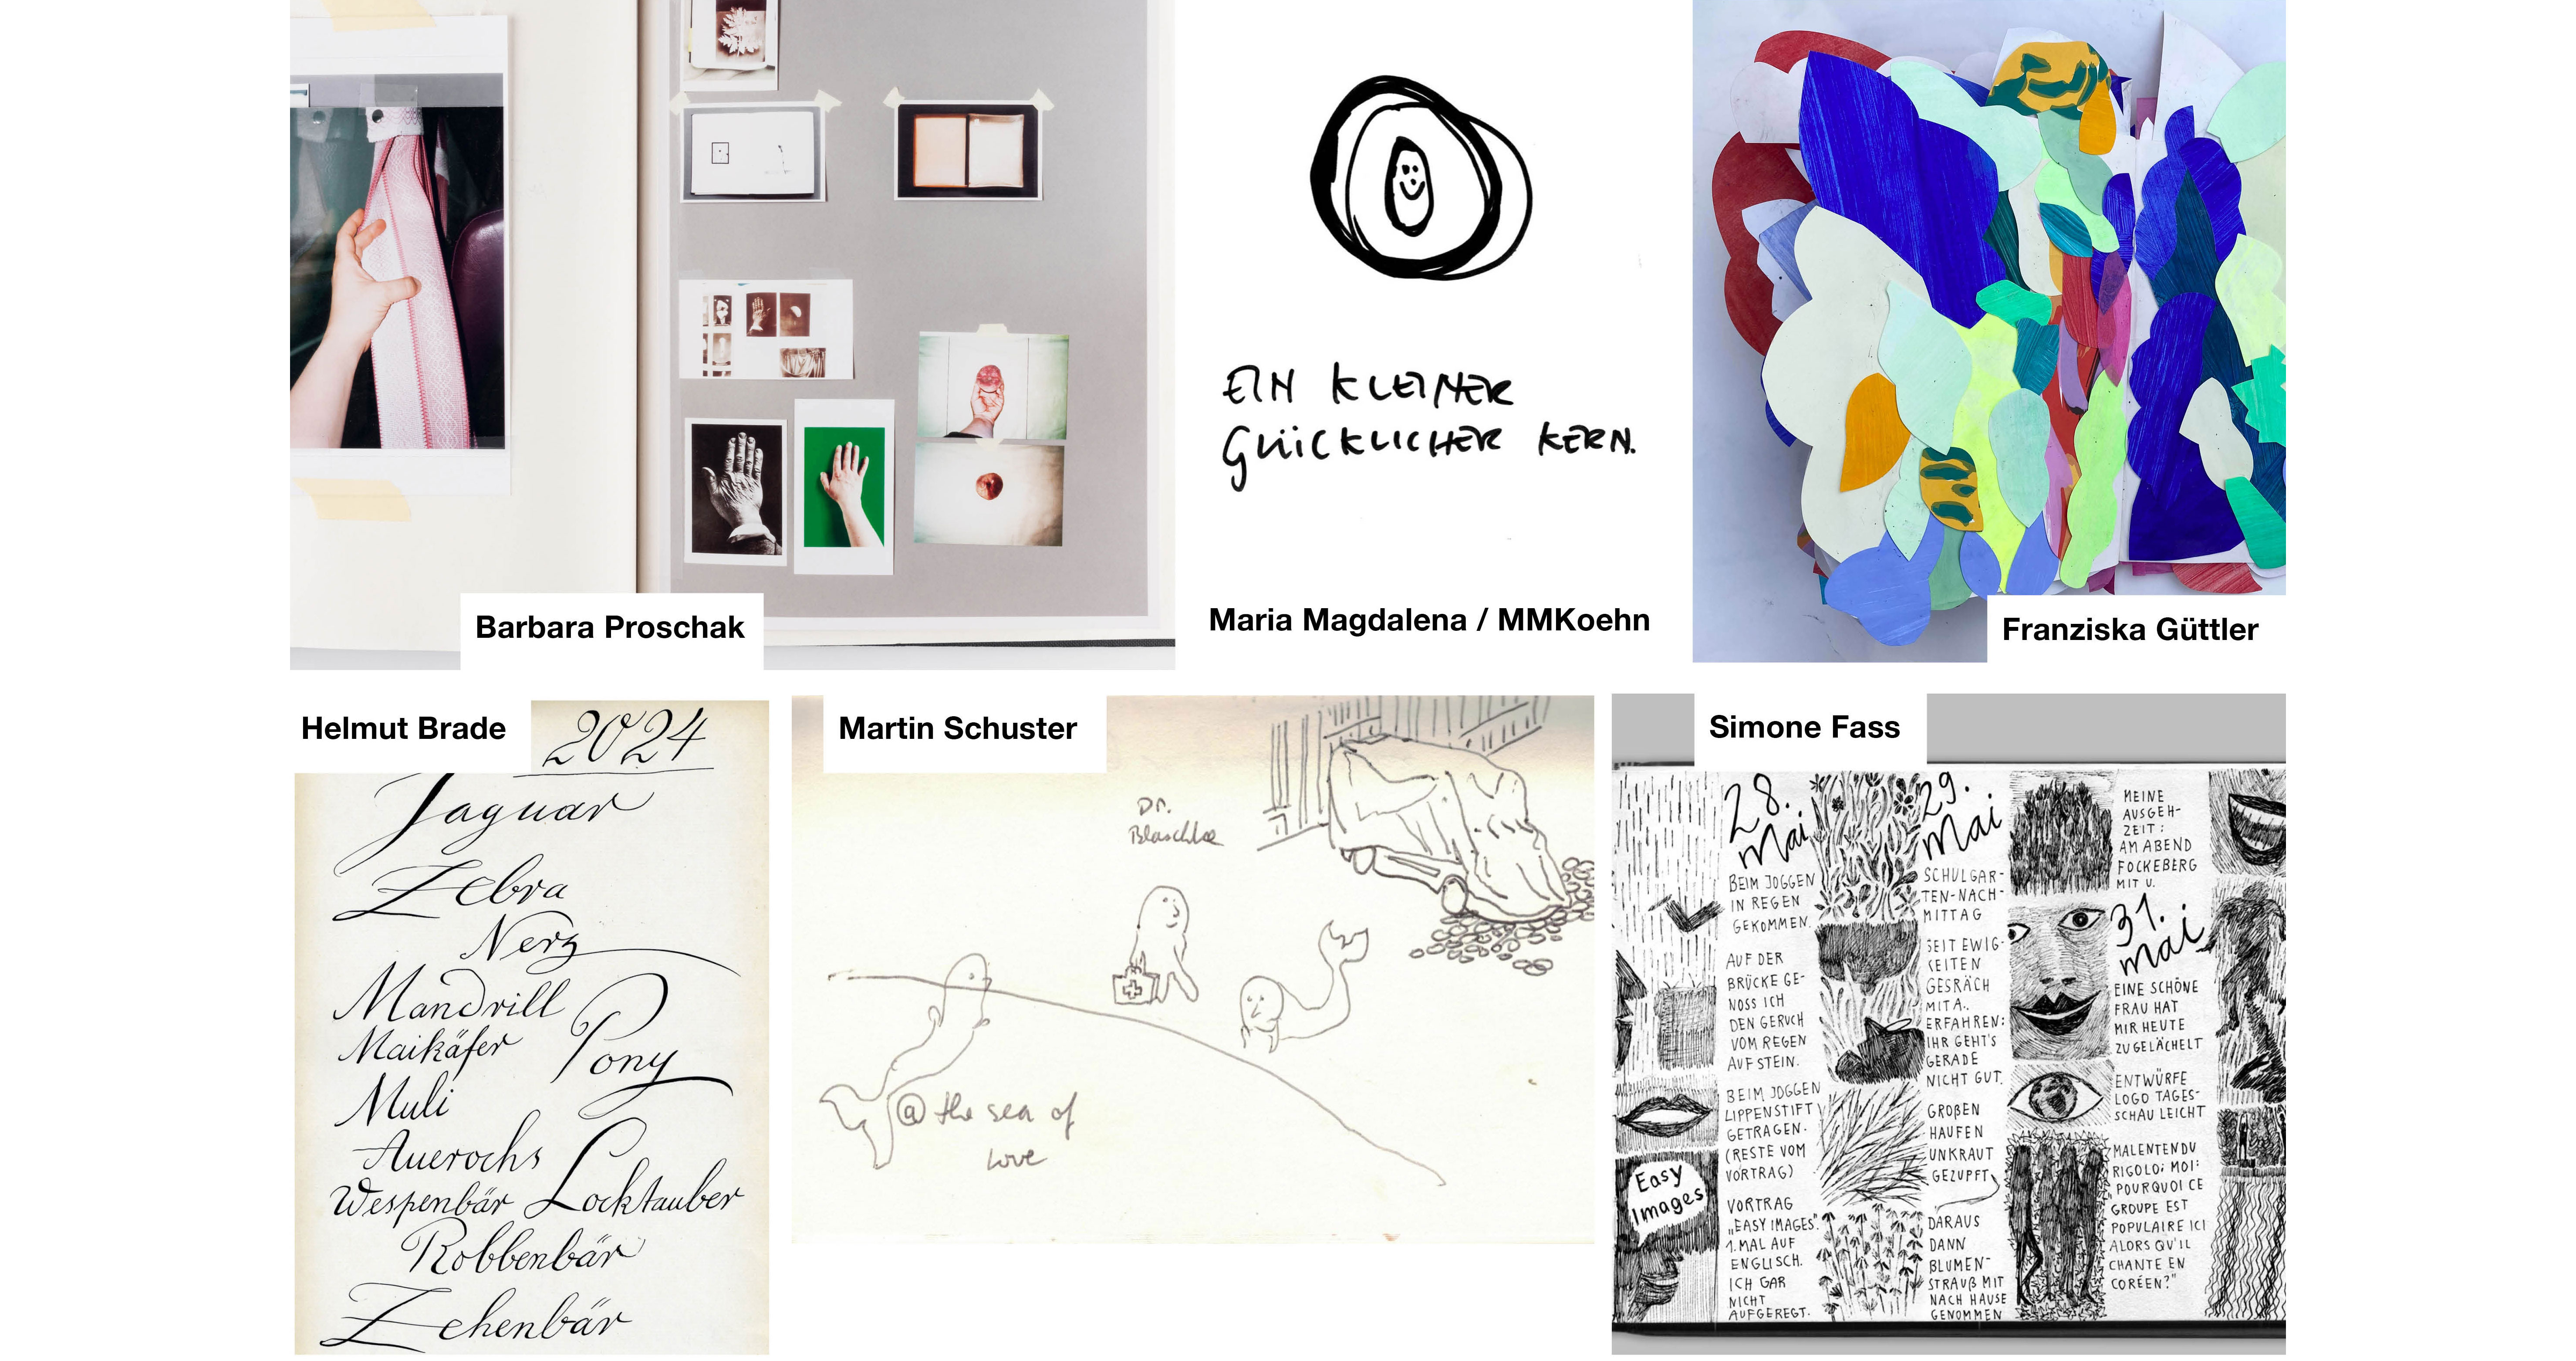 Collage aus 6 Bildern von Tagebüchern der 6 teilnehmenden Künstler*innen. Ein Buch mit Fotocollagen, eine schnelle Skizze mit Text 